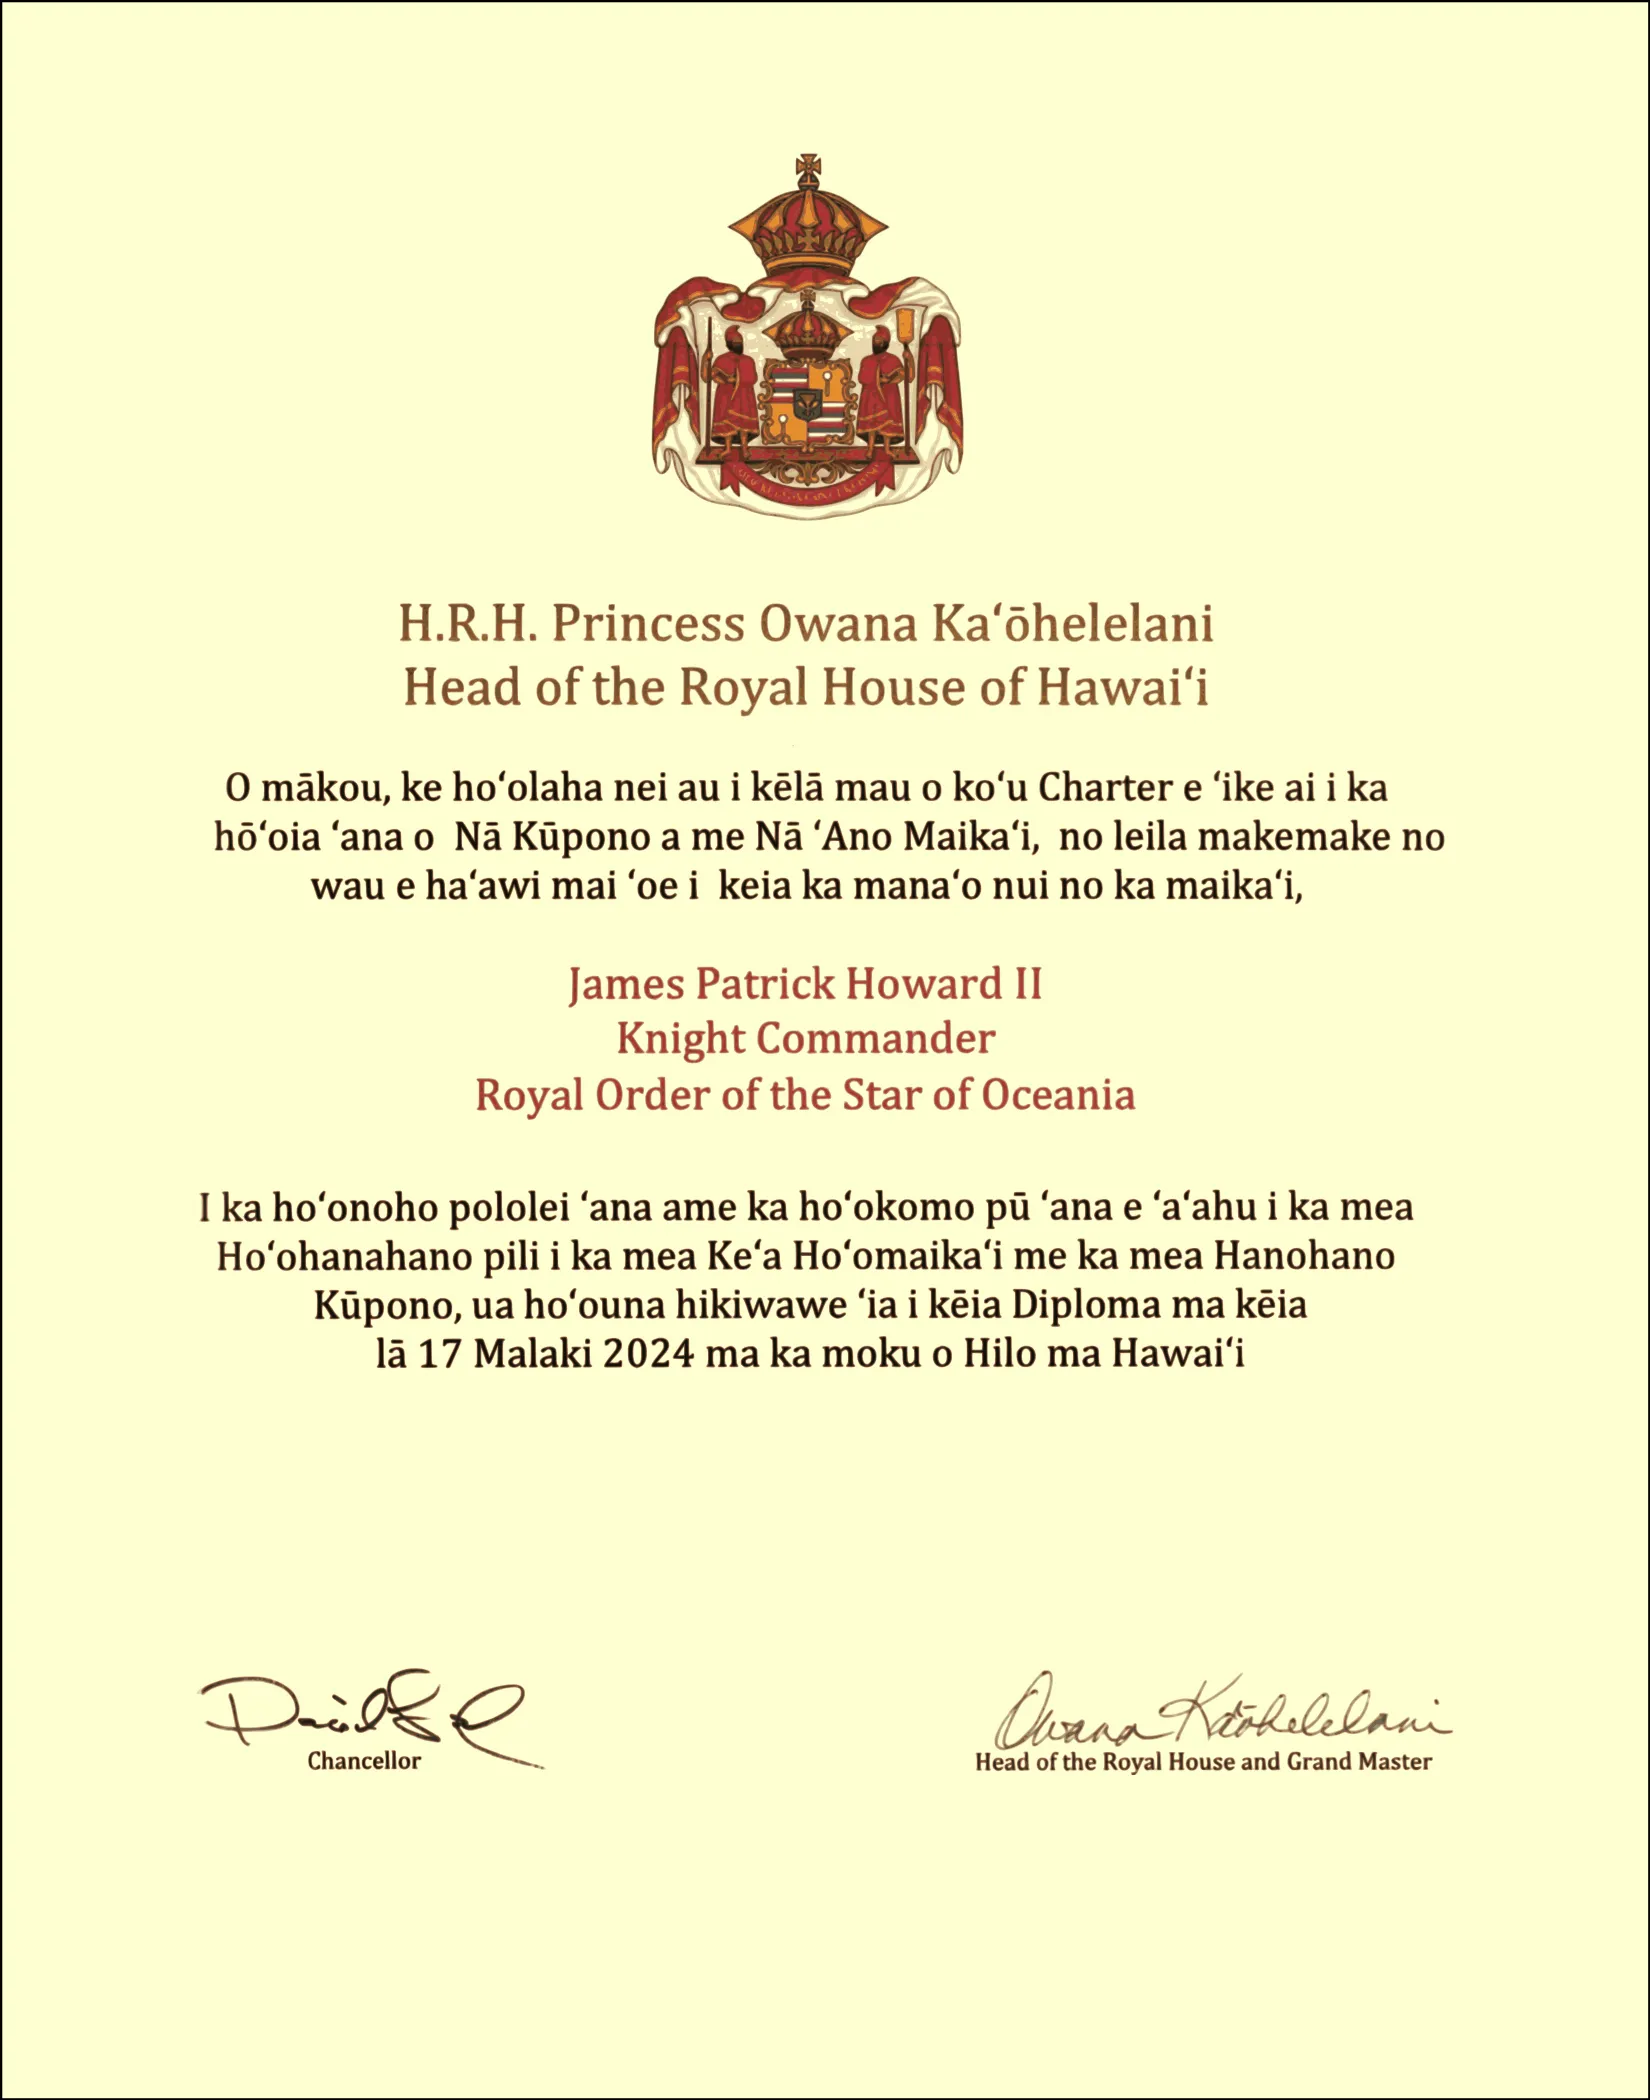 Brevet of Knight Commander of Royal Order of the Star of Oceania